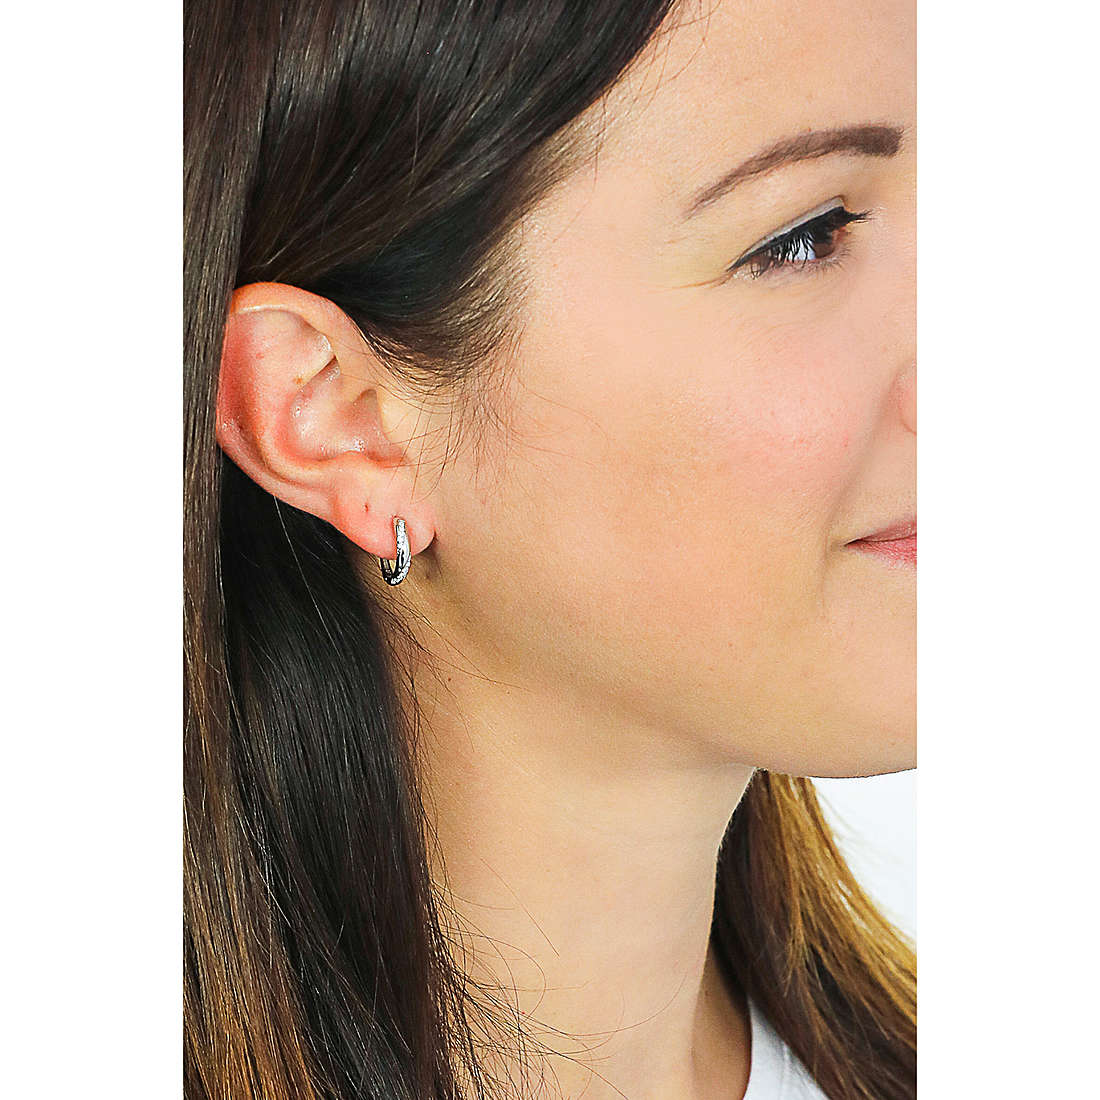 Rebecca earrings Golden ear woman SGEOBB18 wearing